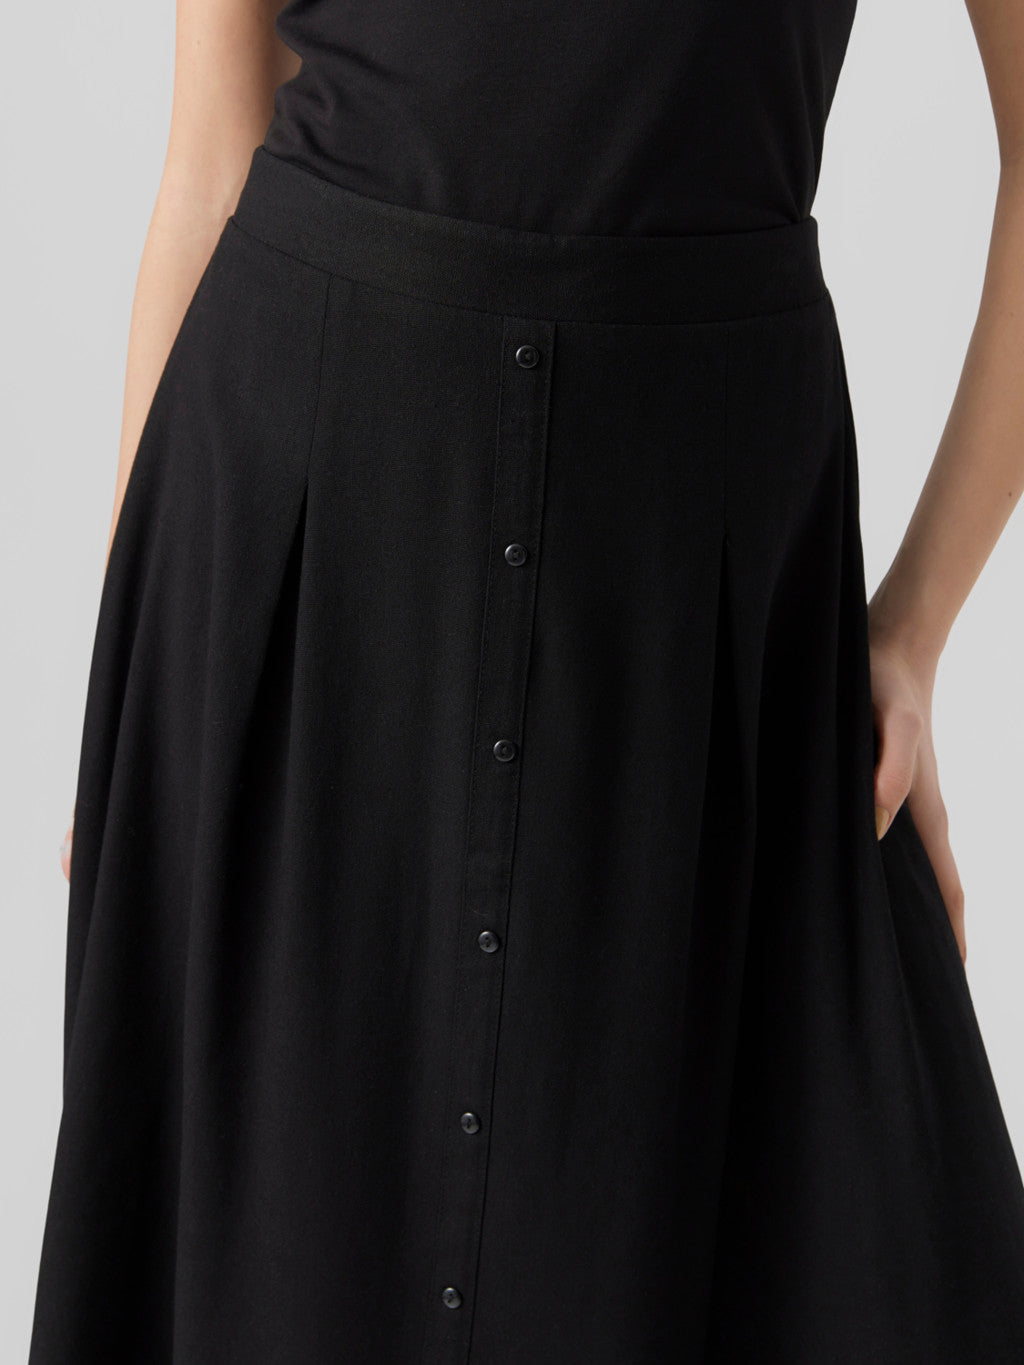 Milo Calf Length Skirt - Vero Moda - Uforia Muse 